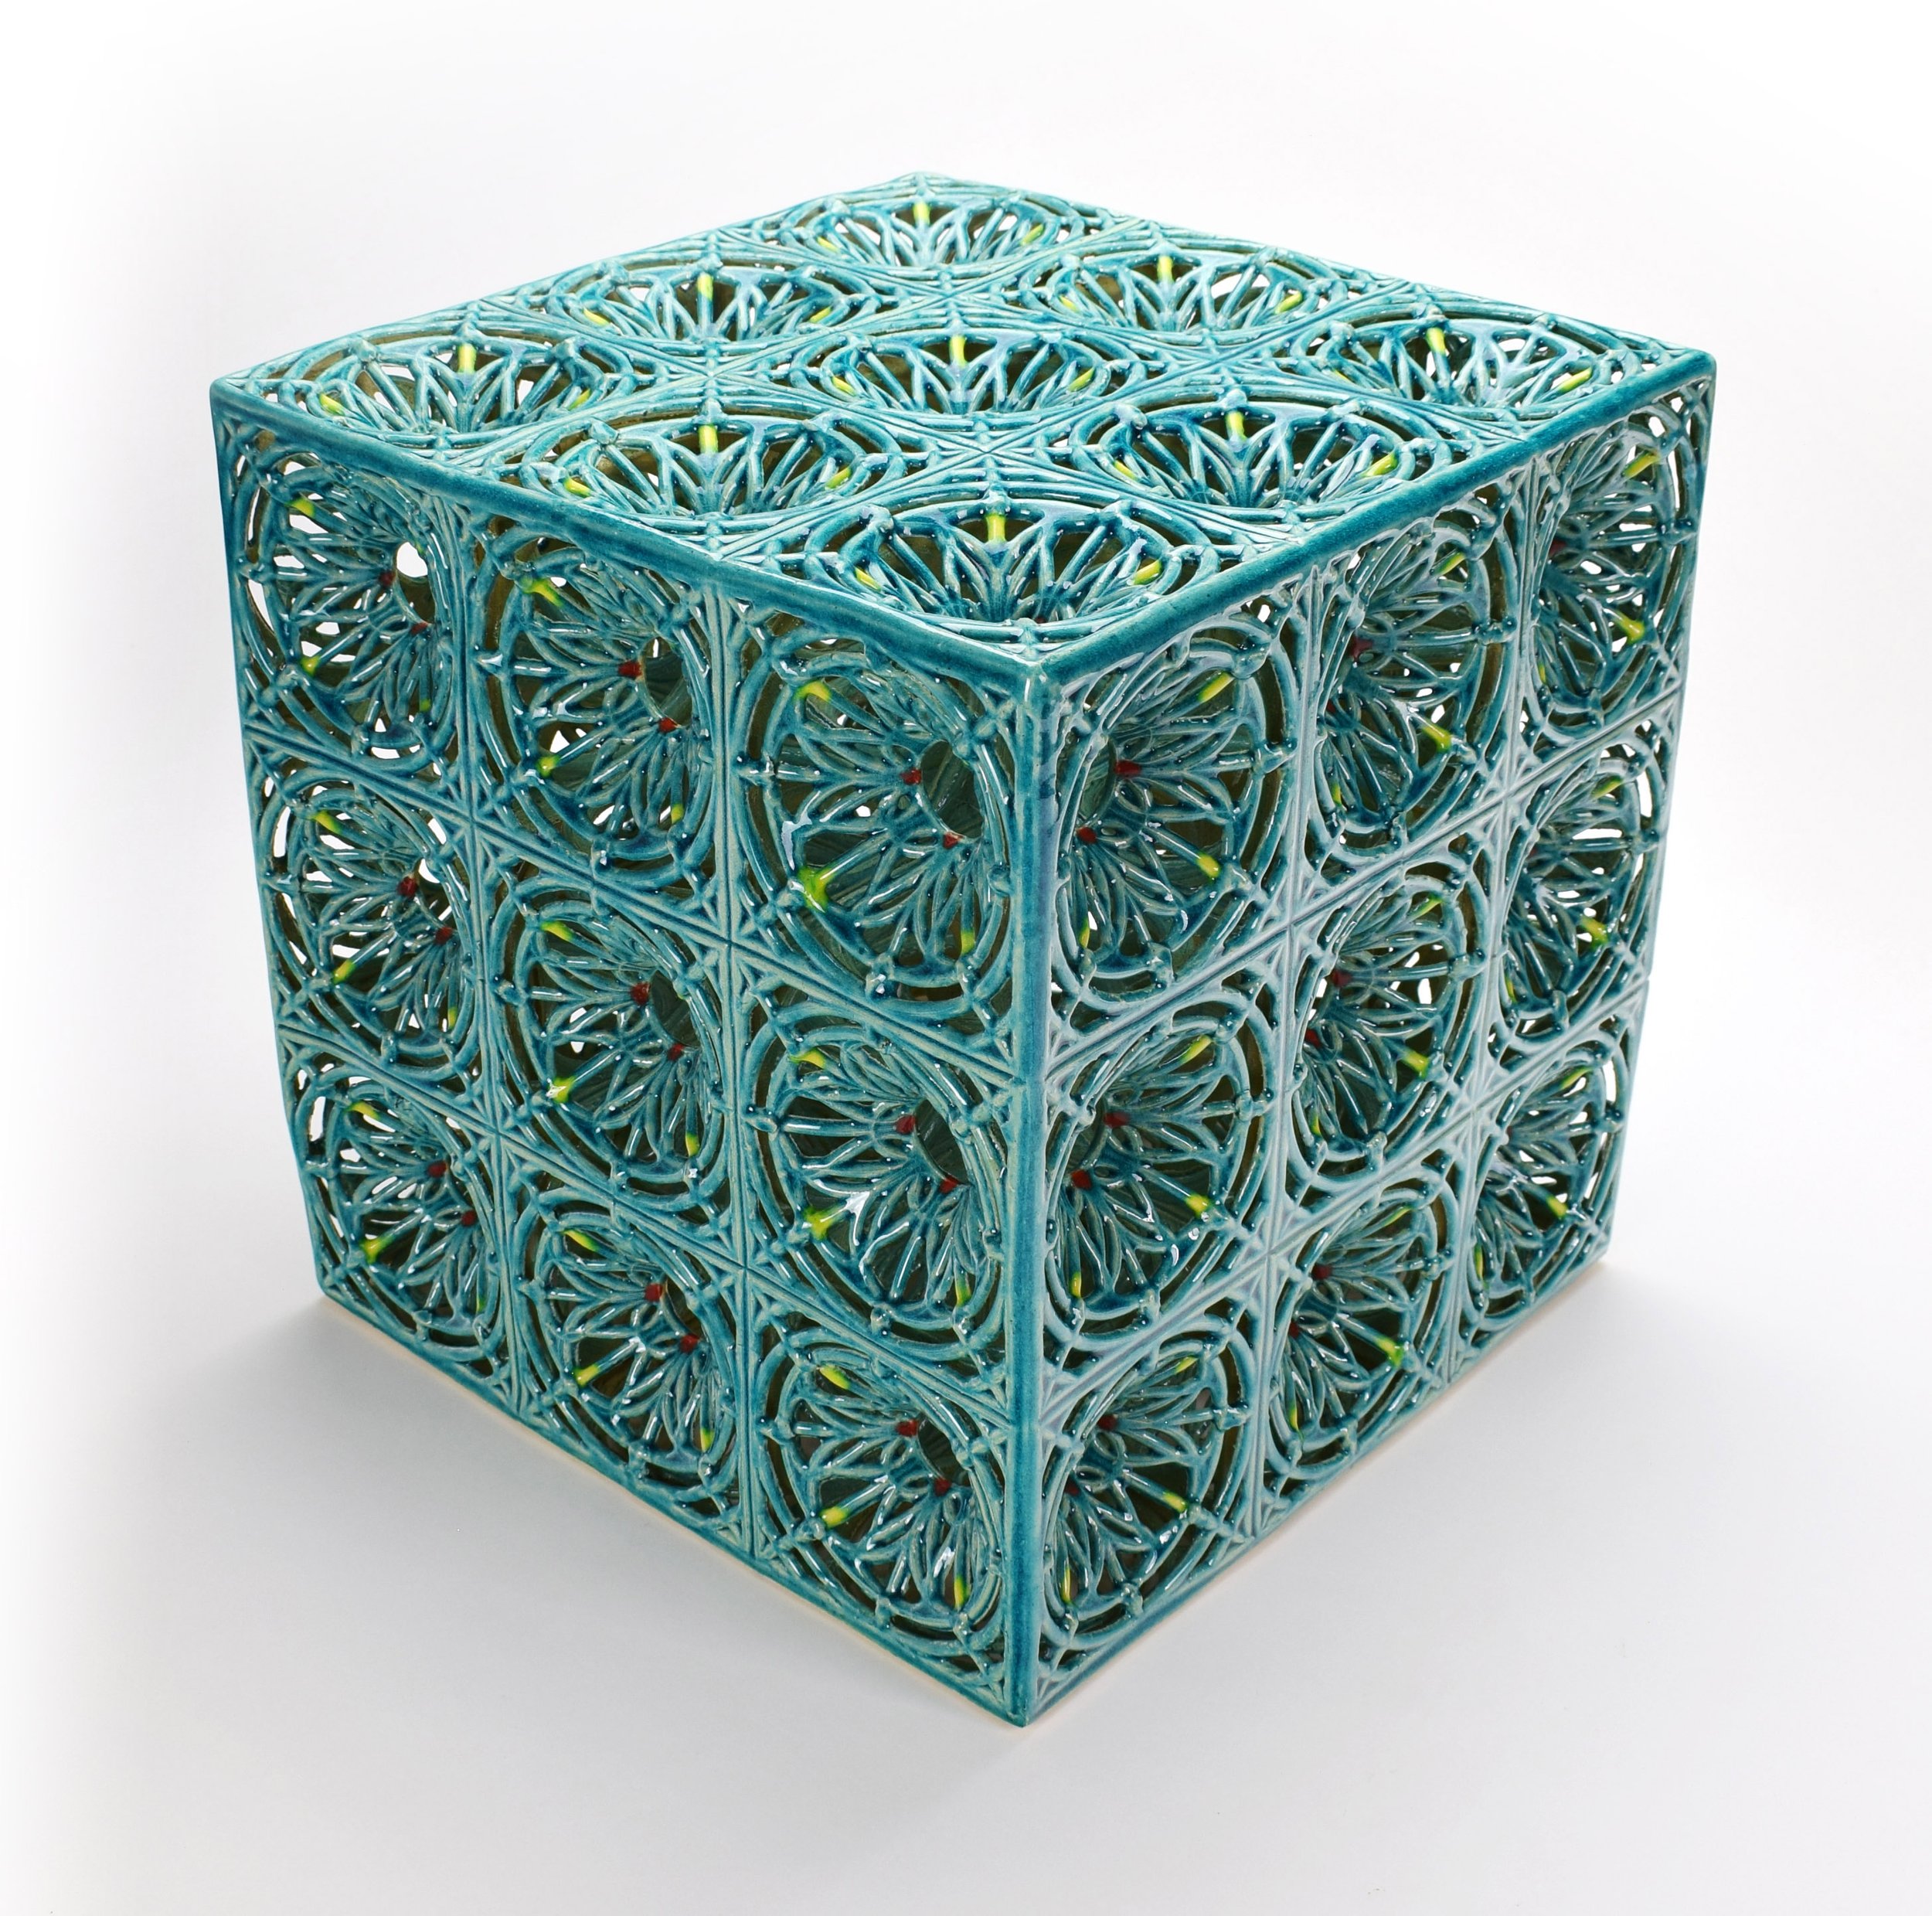 Lattice Cube, Stoneware Cone 6, 11 x 11 x 11 in, Photo: Eliza Au